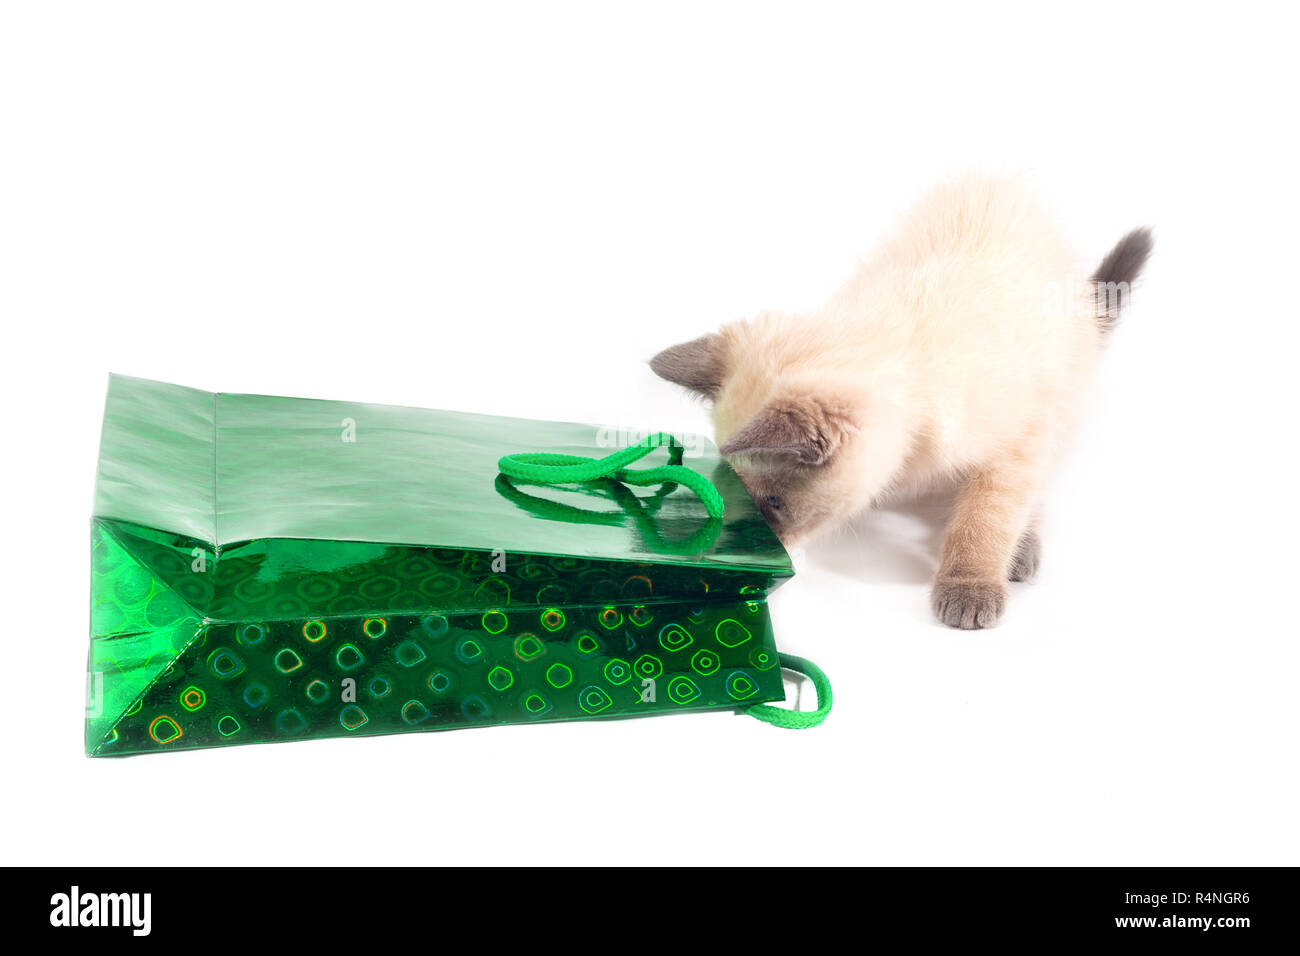 Die Katze schaut in den Urlaub. Eine Farbe - point Katze neugierig klettert in eine glänzende grüne Tasche. Stockfoto